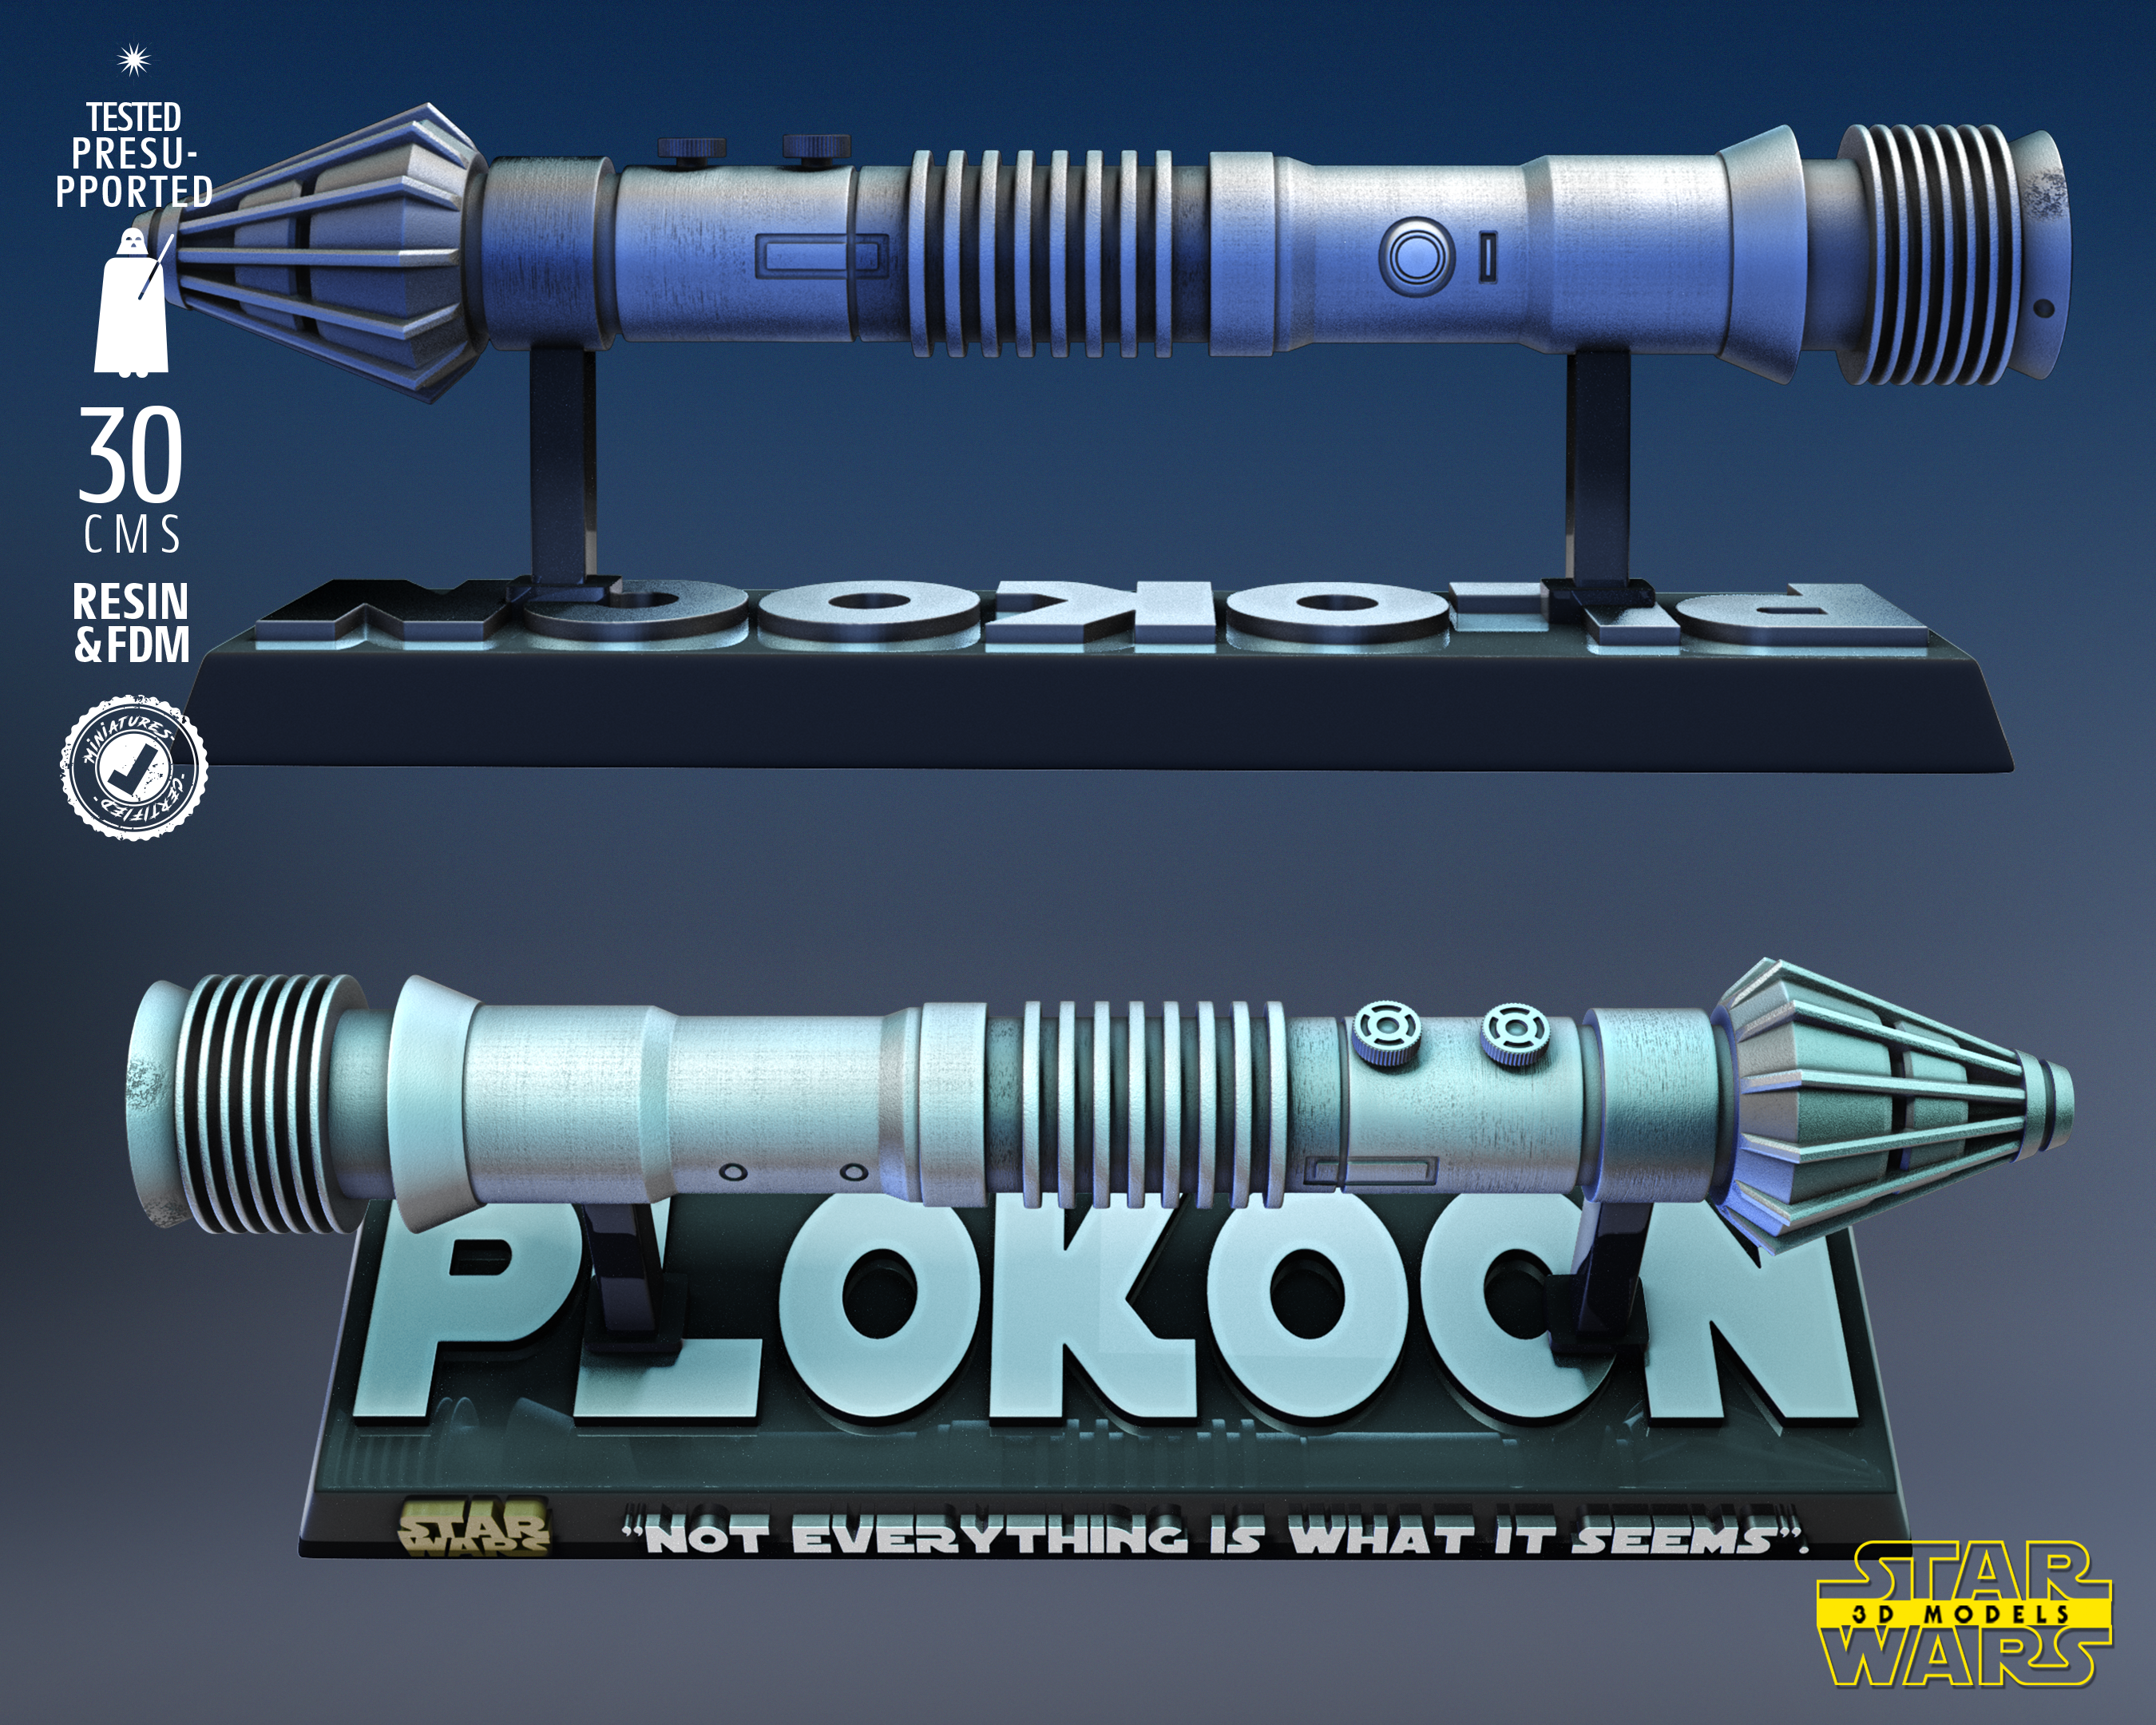 Pio Koon Saber (Star Wars) Fan Art - 1:1 or 1:2 Scale (300mm or 150mm Long) - 3D Printed